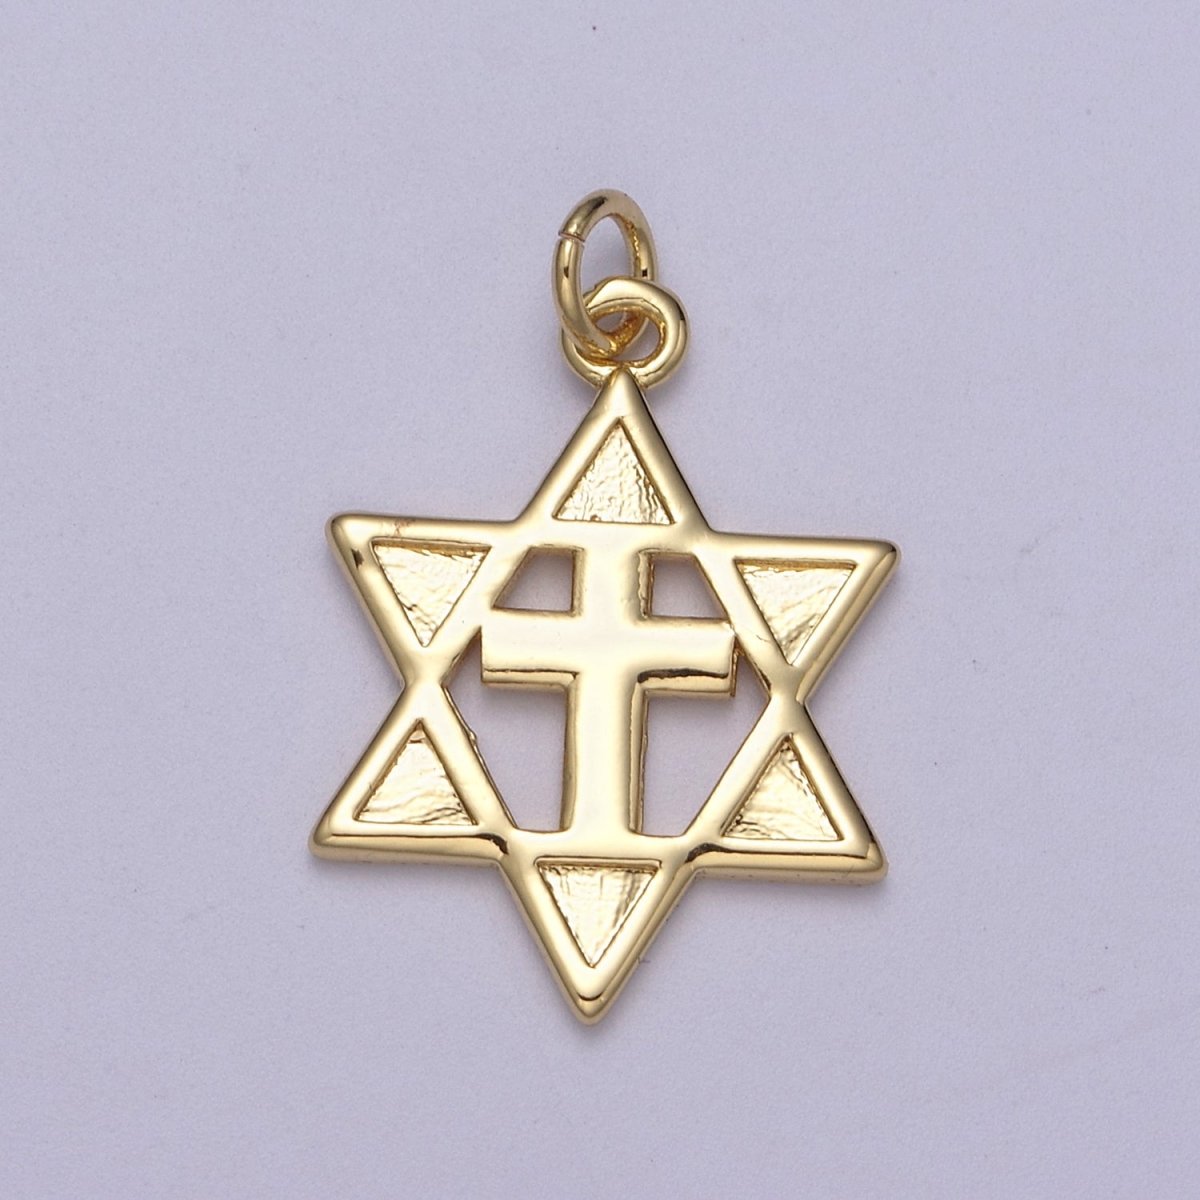 Gold Star of David Cross Pendant, Solid Magen David Jewish Star Jewelry N-339 - DLUXCA